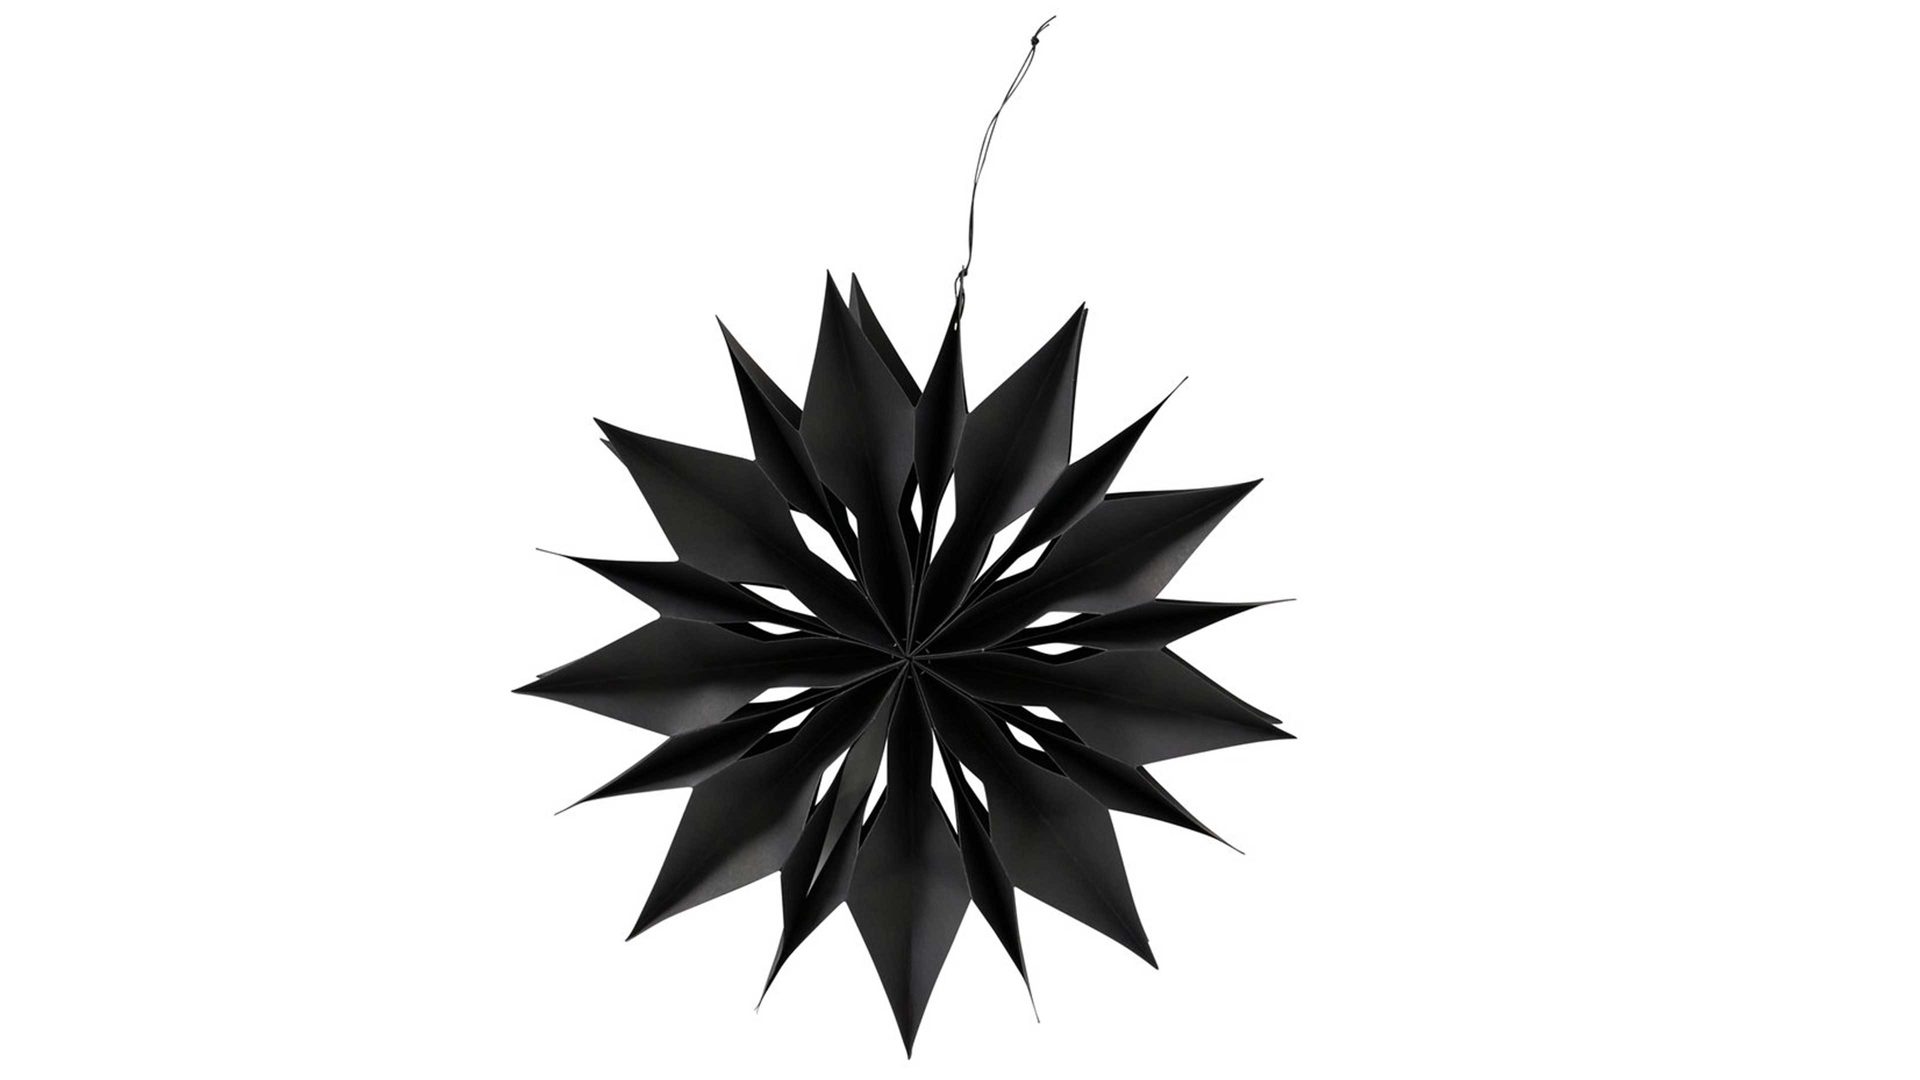 Weihnachtsdekoration Boltze aus Karton / Papier / Pappe in Schwarz Stern-Dekoanhänger Kassia III Schwarz - Durchmesser ca. 40 cm